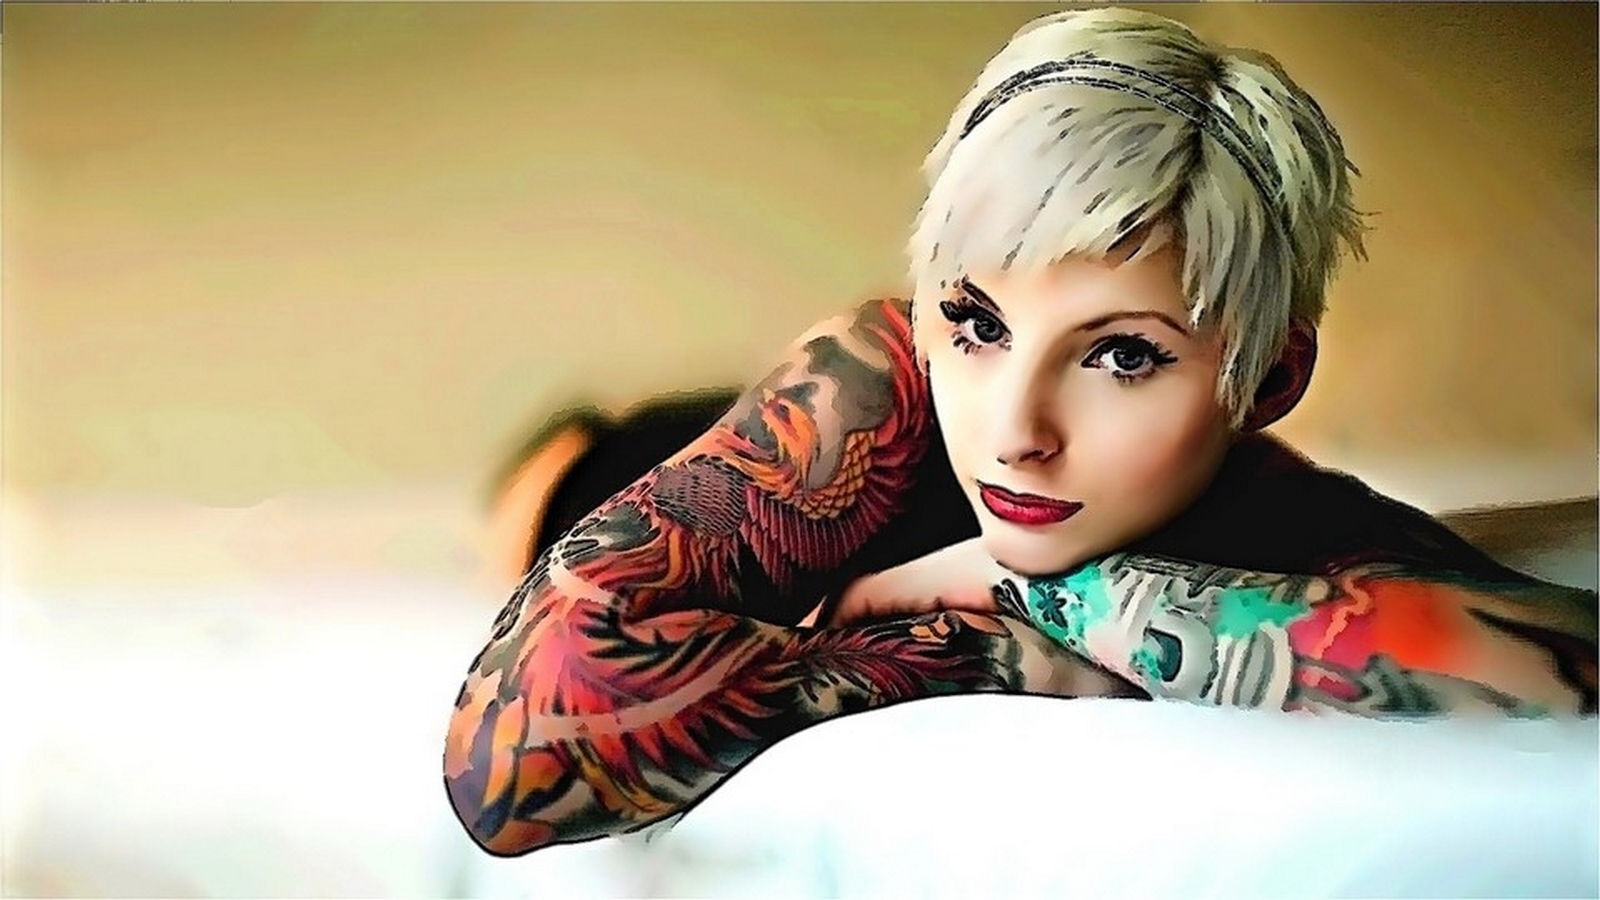 hot tattoo girl wallpaper,tatuaje,belleza,rubio,fotografía,sesión de fotos